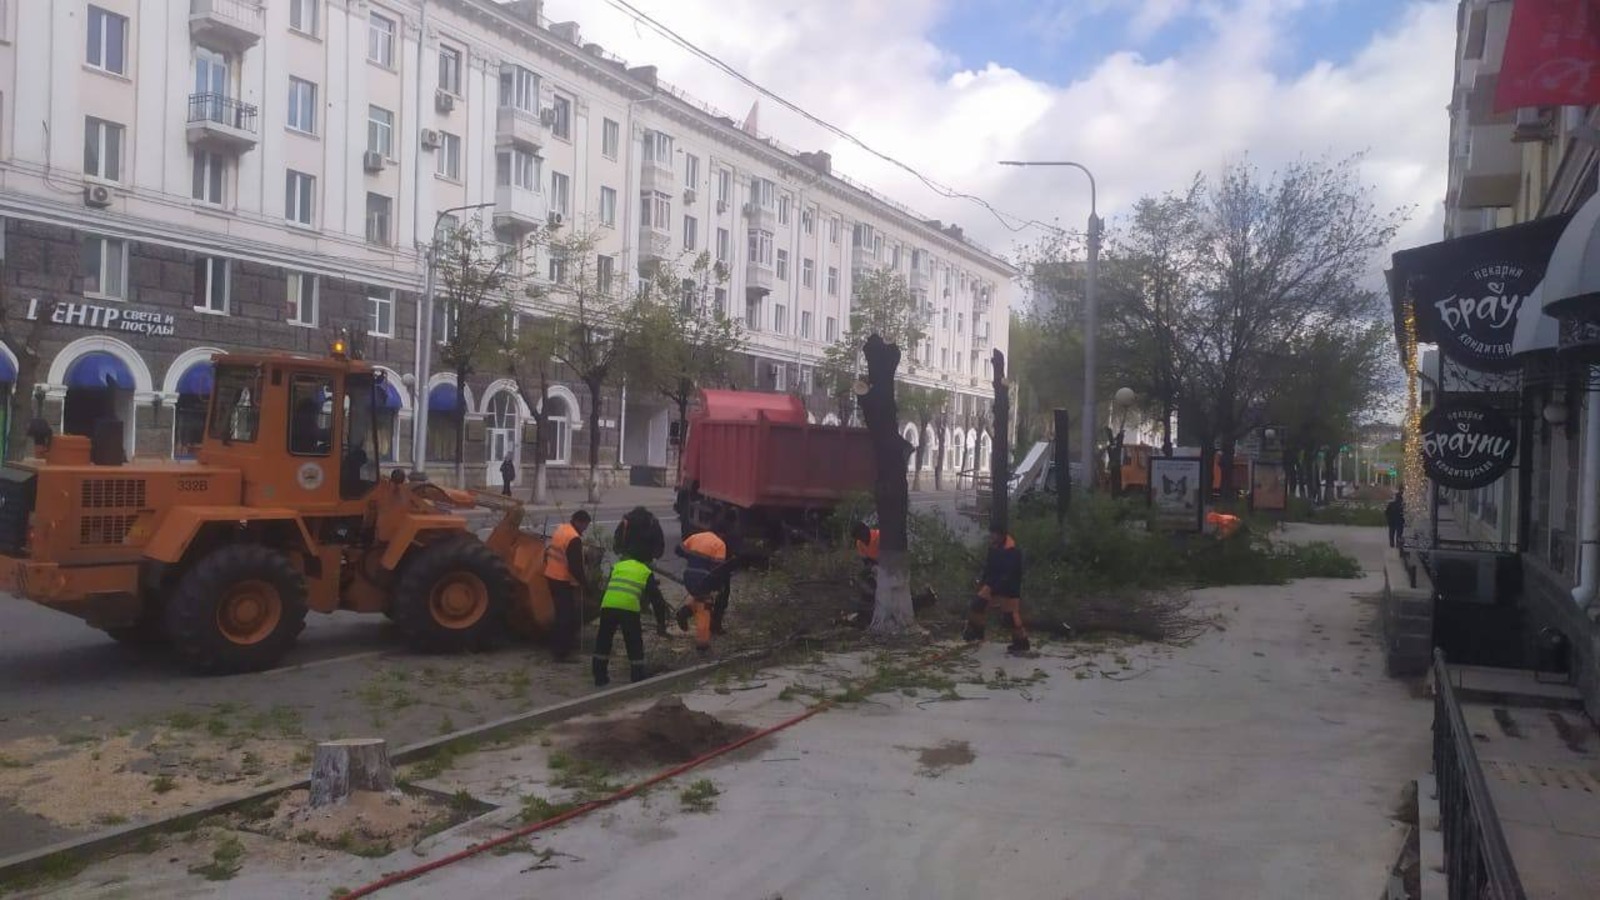 Эксперты прокомментировали массовый демонтаж деревьев в центре Уфы